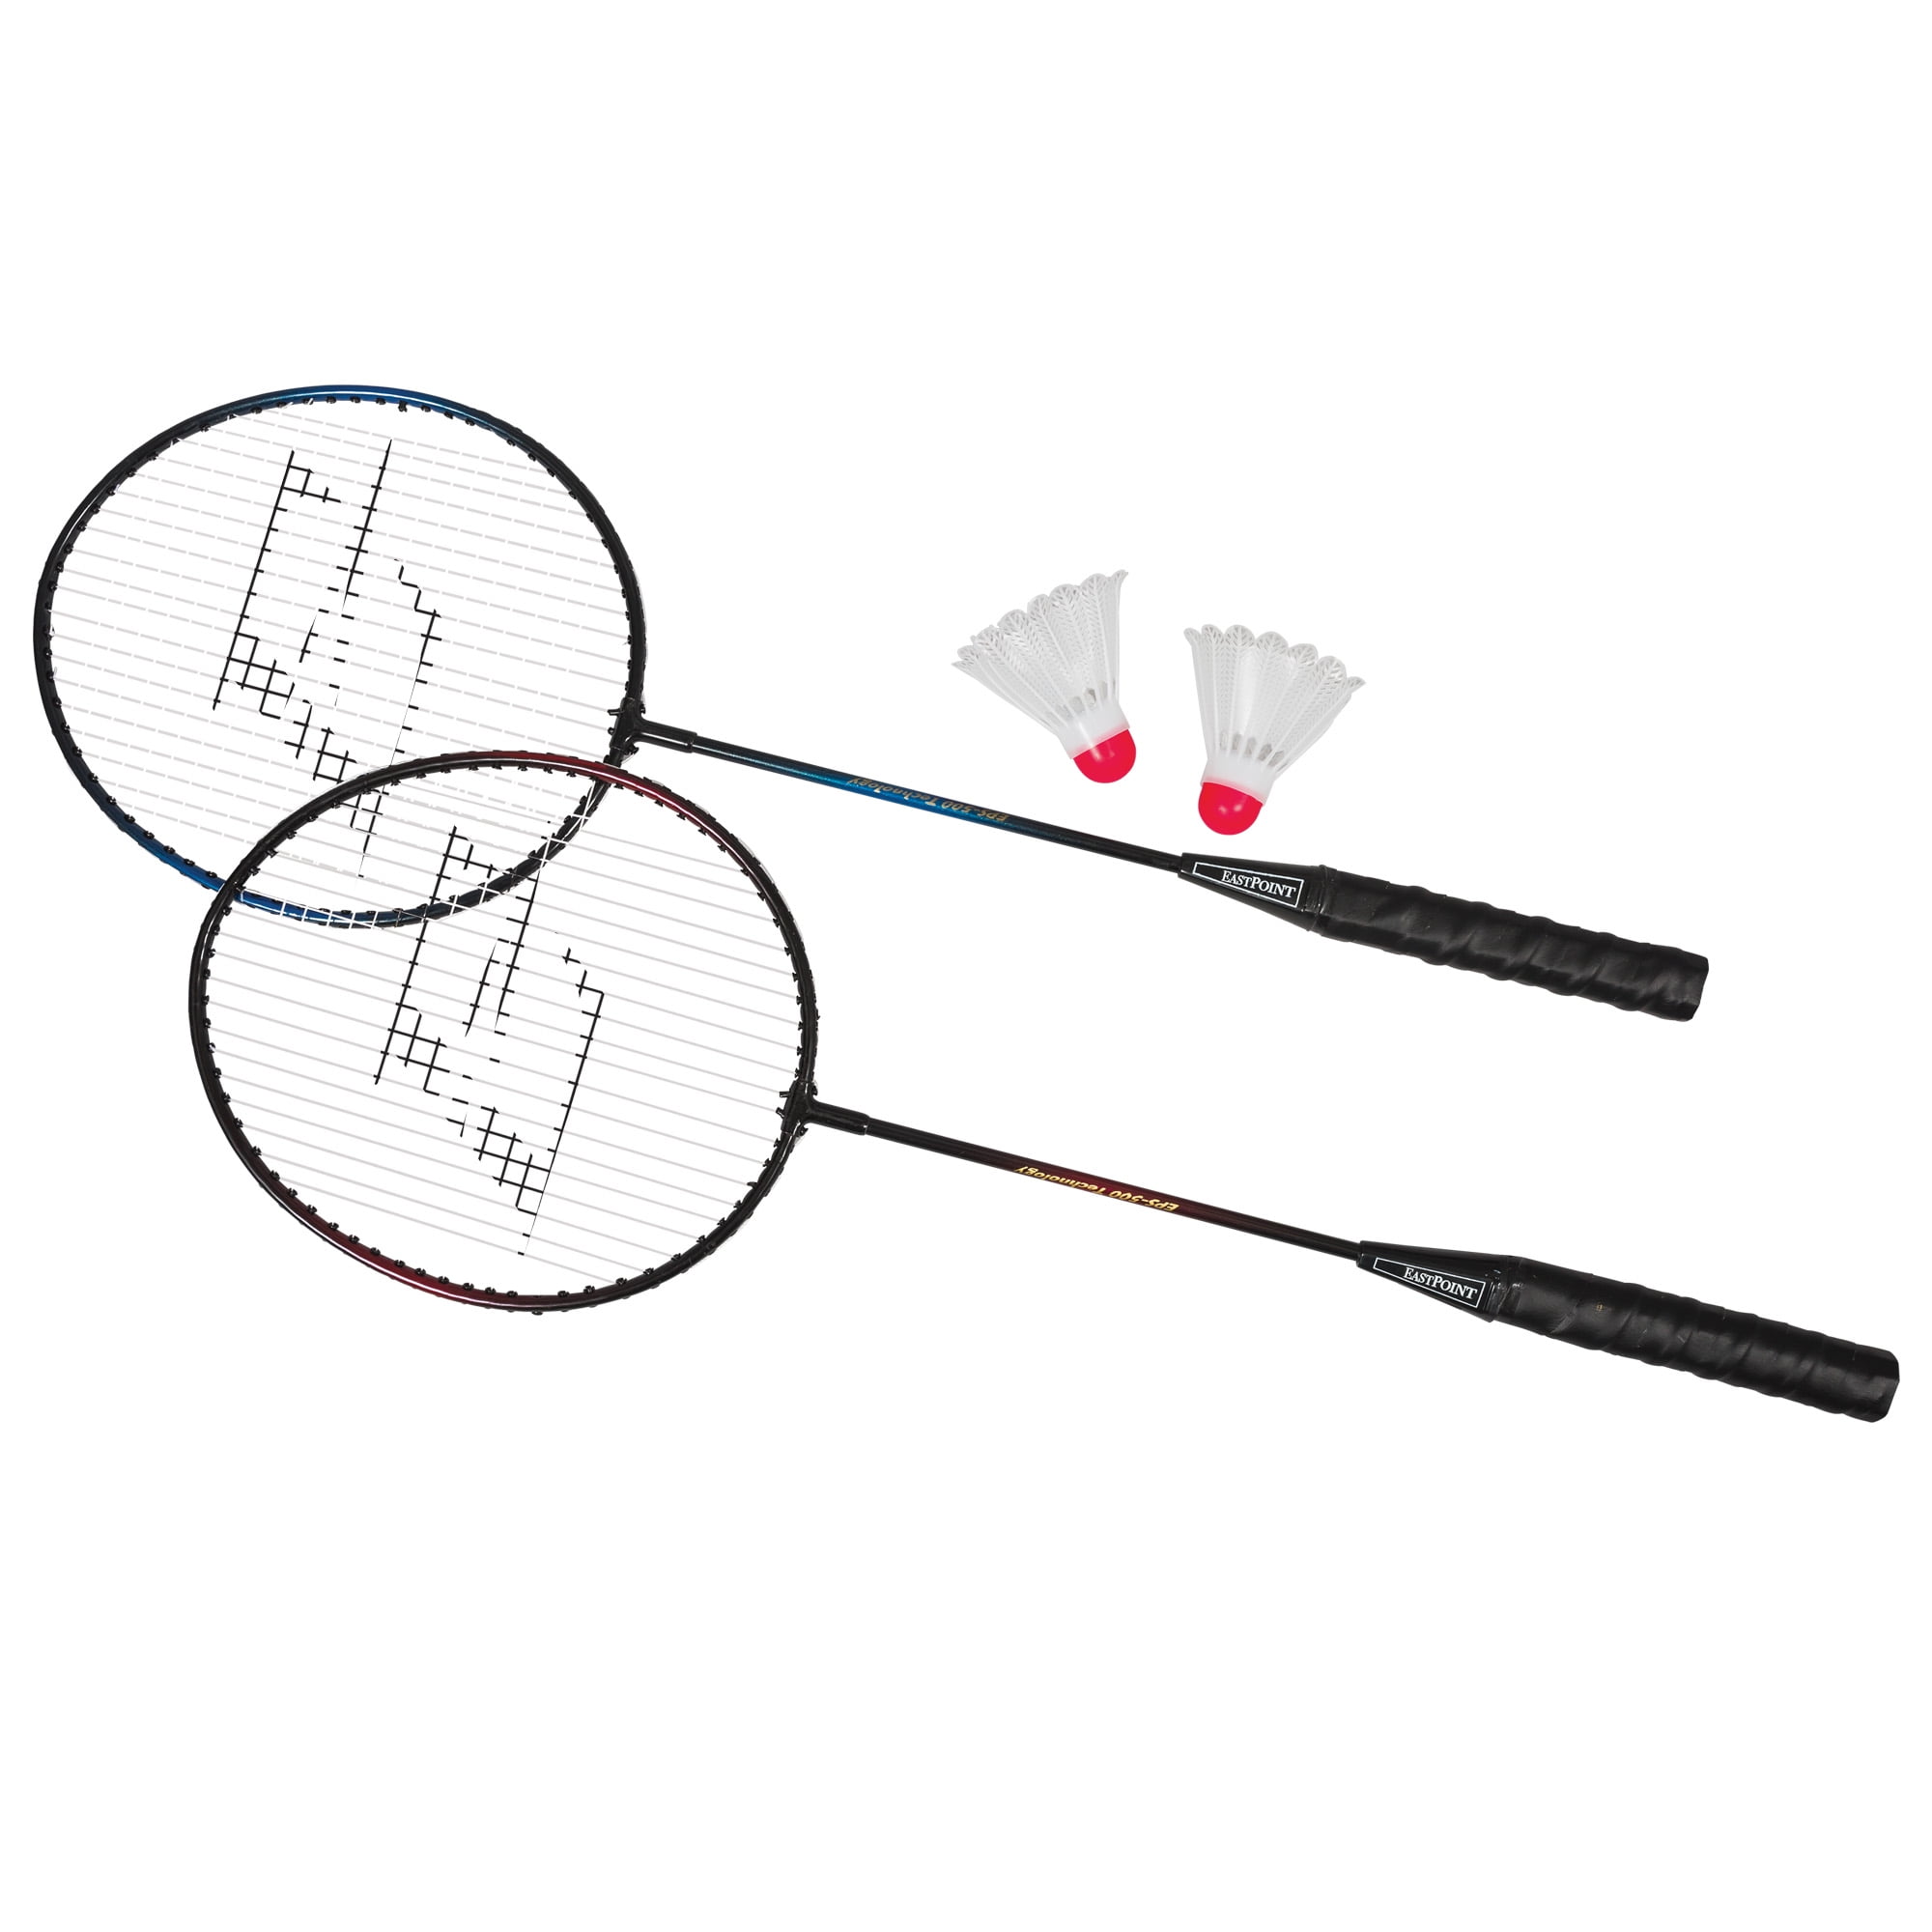 2 Player Badminton Racquet Set Y5Y6 Strung 4UG4 100% Graphite 